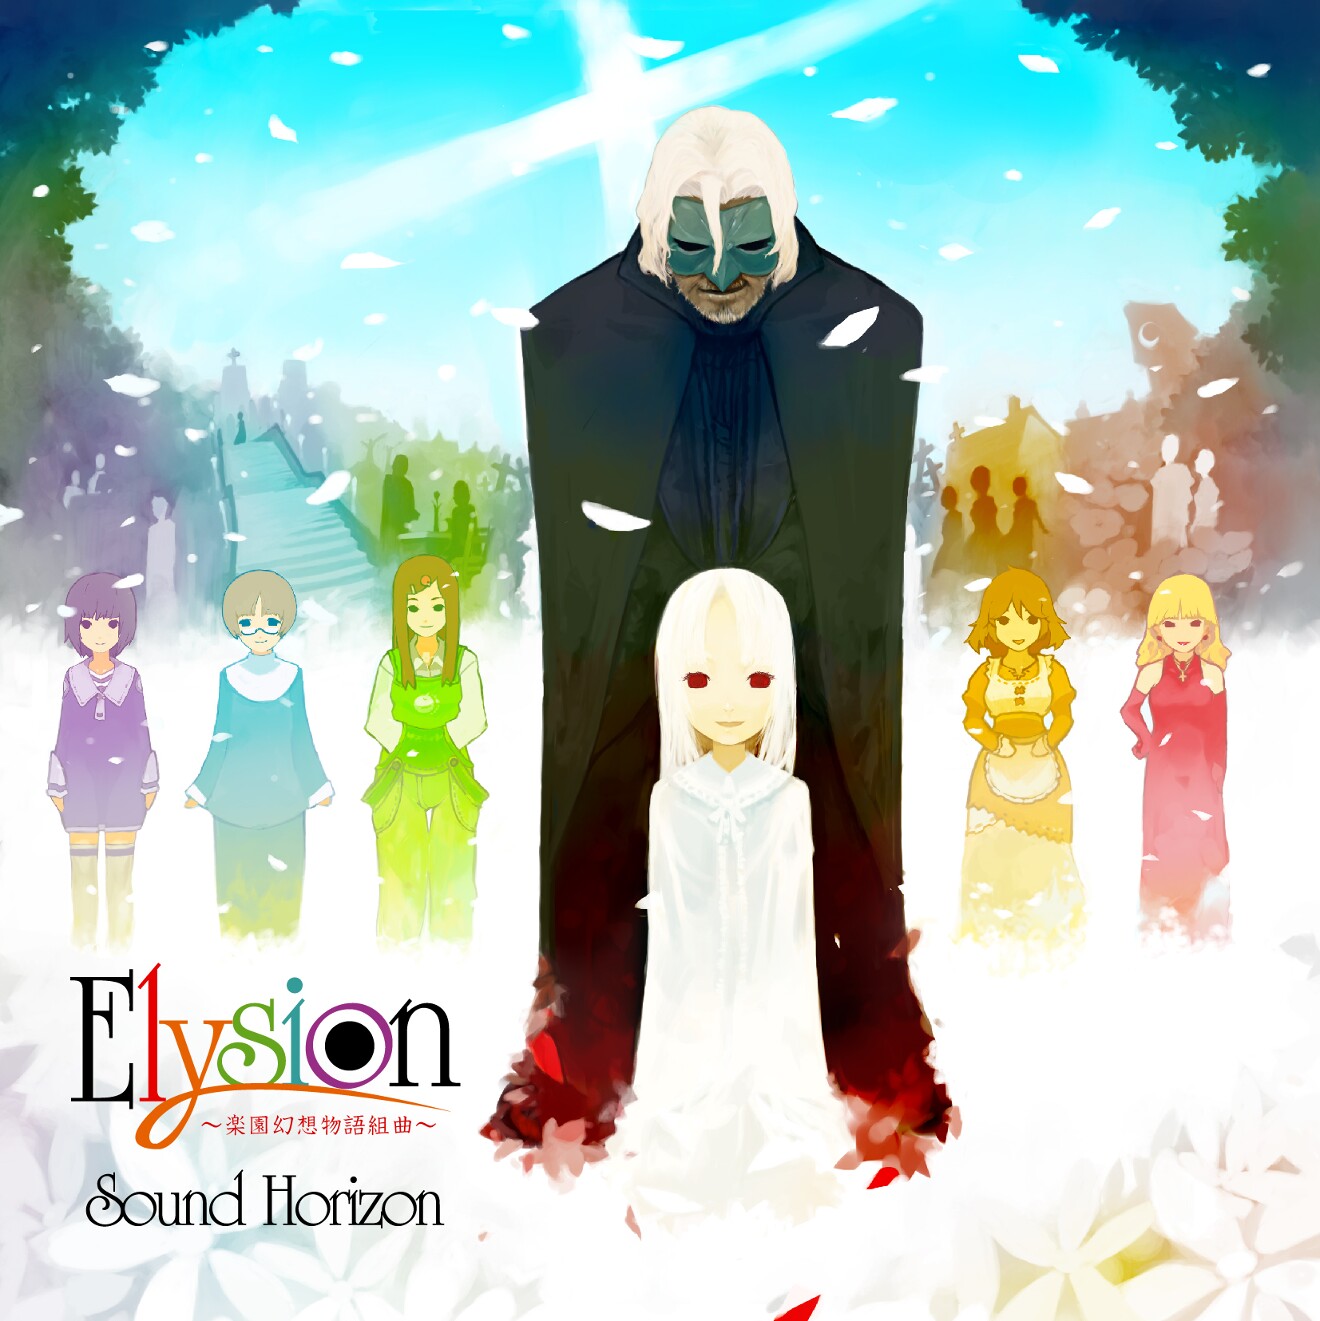 音楽ユニットSound Horizonの曲「StarDust」の歌詞を考察【「Elysion」収録曲】